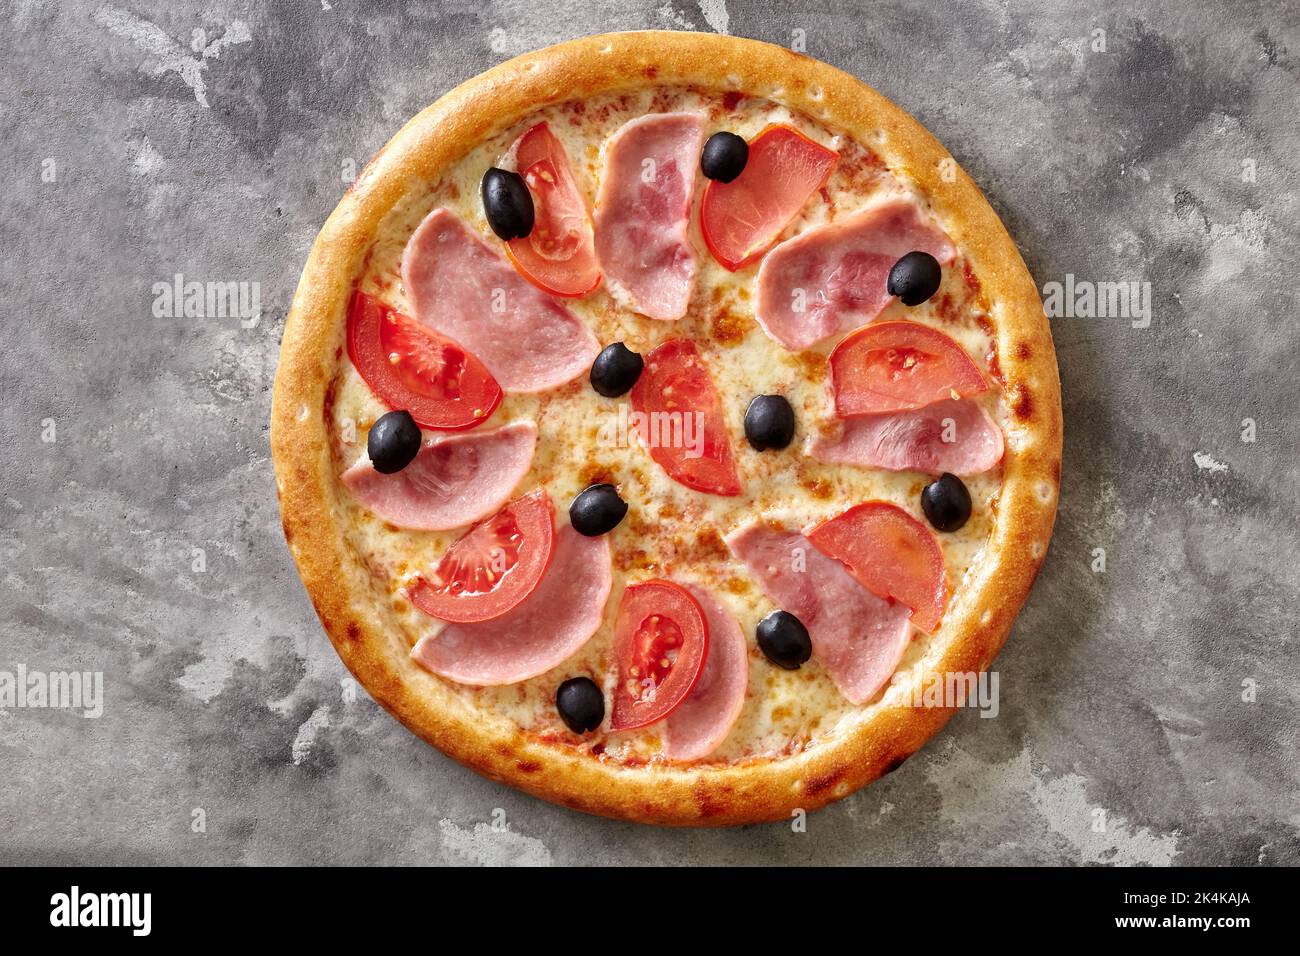 Dünne klassische Pizza mit geschmolzenem Käse, Schinken, Tomaten und schwarzen Oliven auf grauer Steinoberfläche Stockfoto